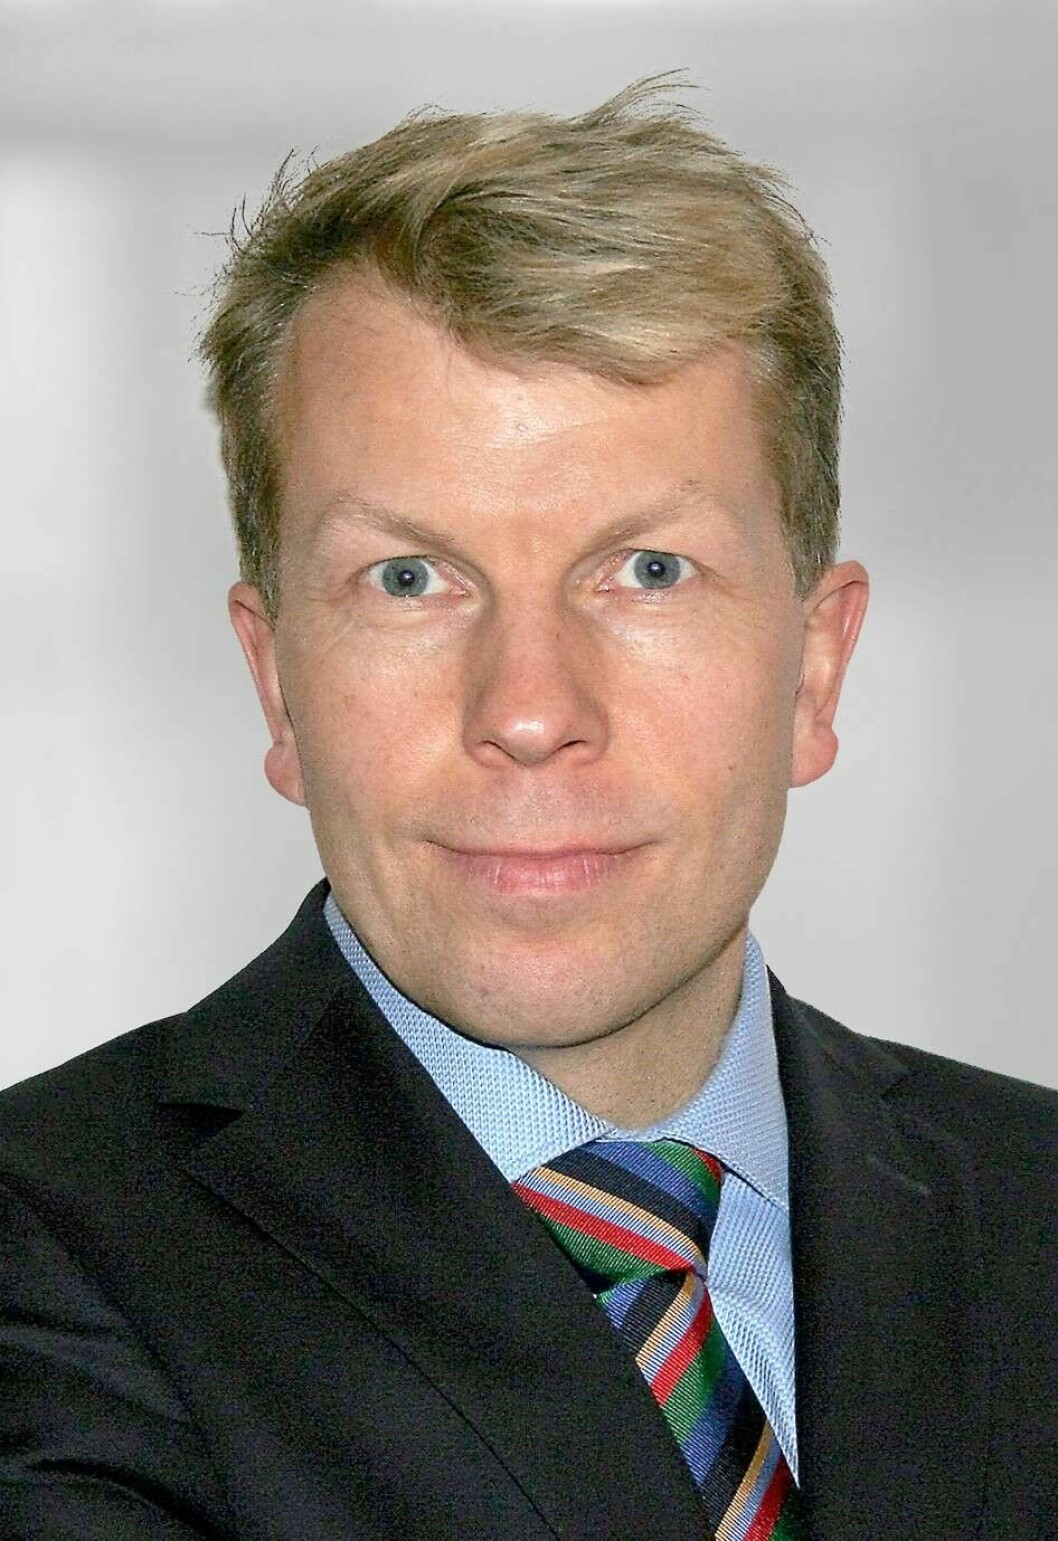 SALG OG BUSINESS: Morten Marwell-Hauge er leder for salg og forretningsutvikling i NTI FM Systems. (Pressefoto)